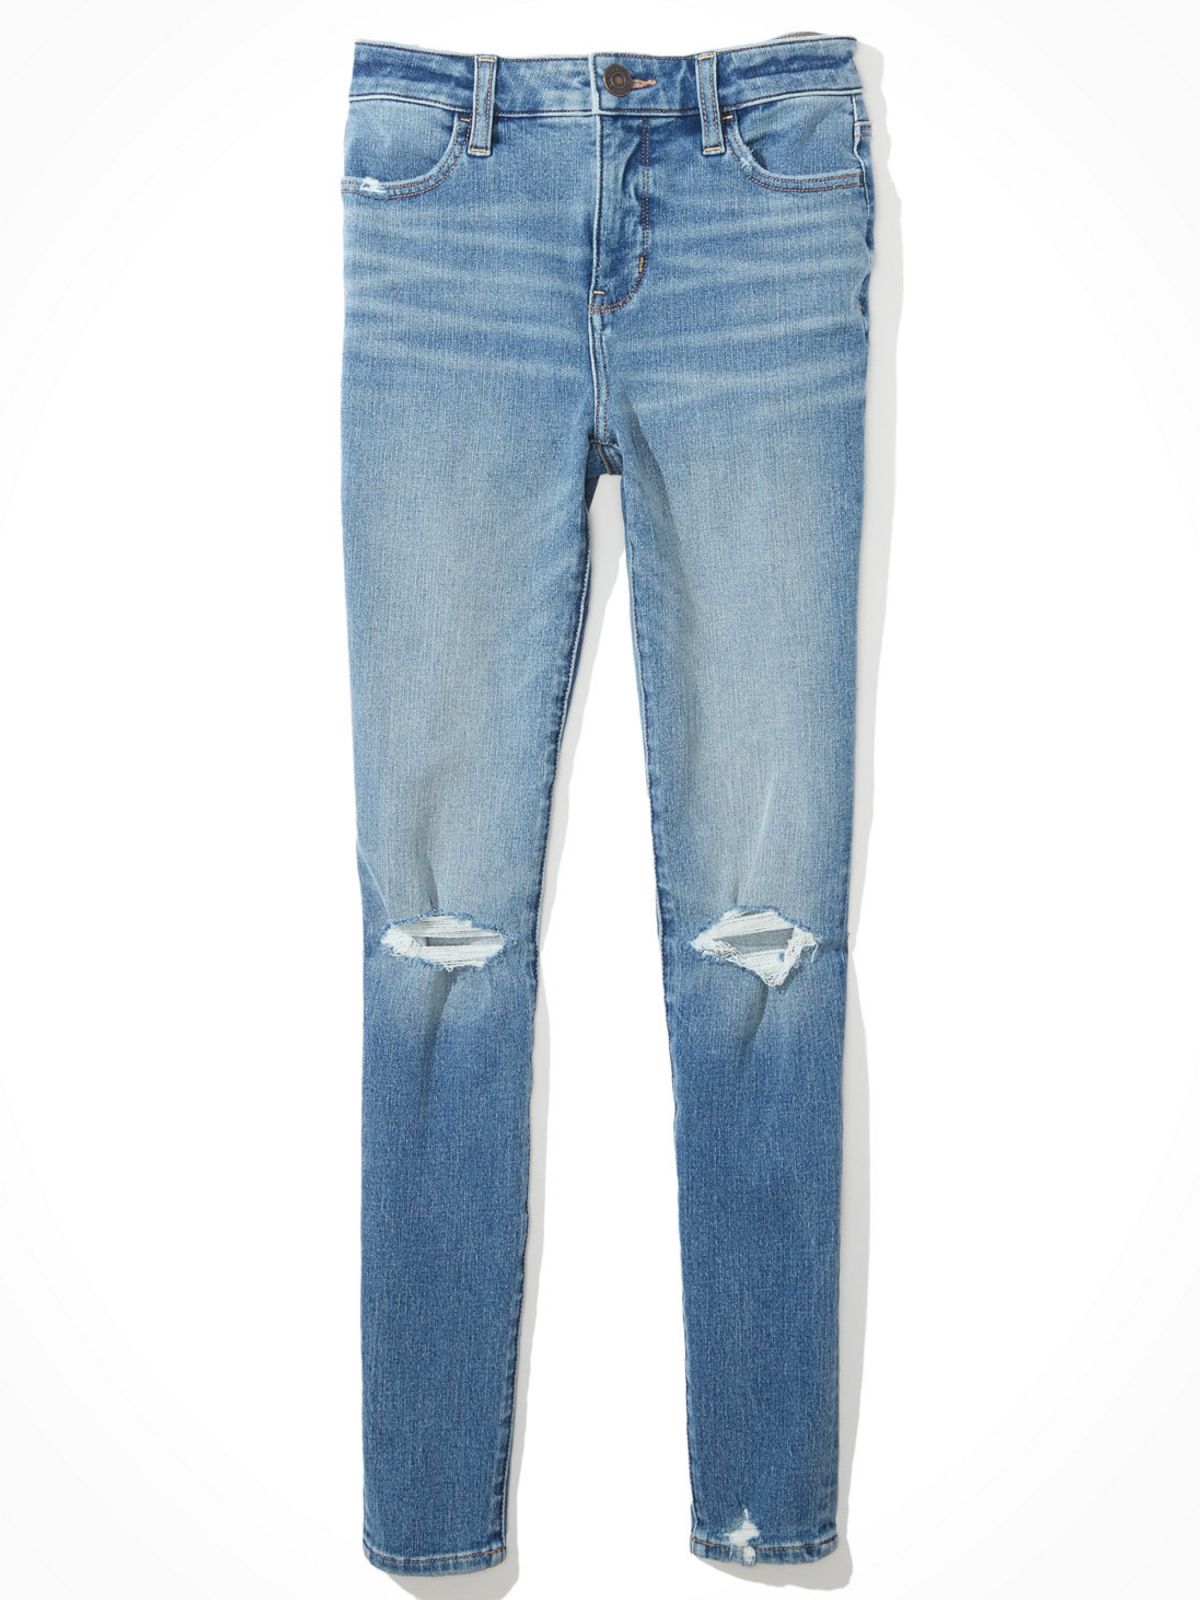  סקיני ג'ינס בשטיפה בהירה עם קרעים Jegging של AMERICAN EAGLE